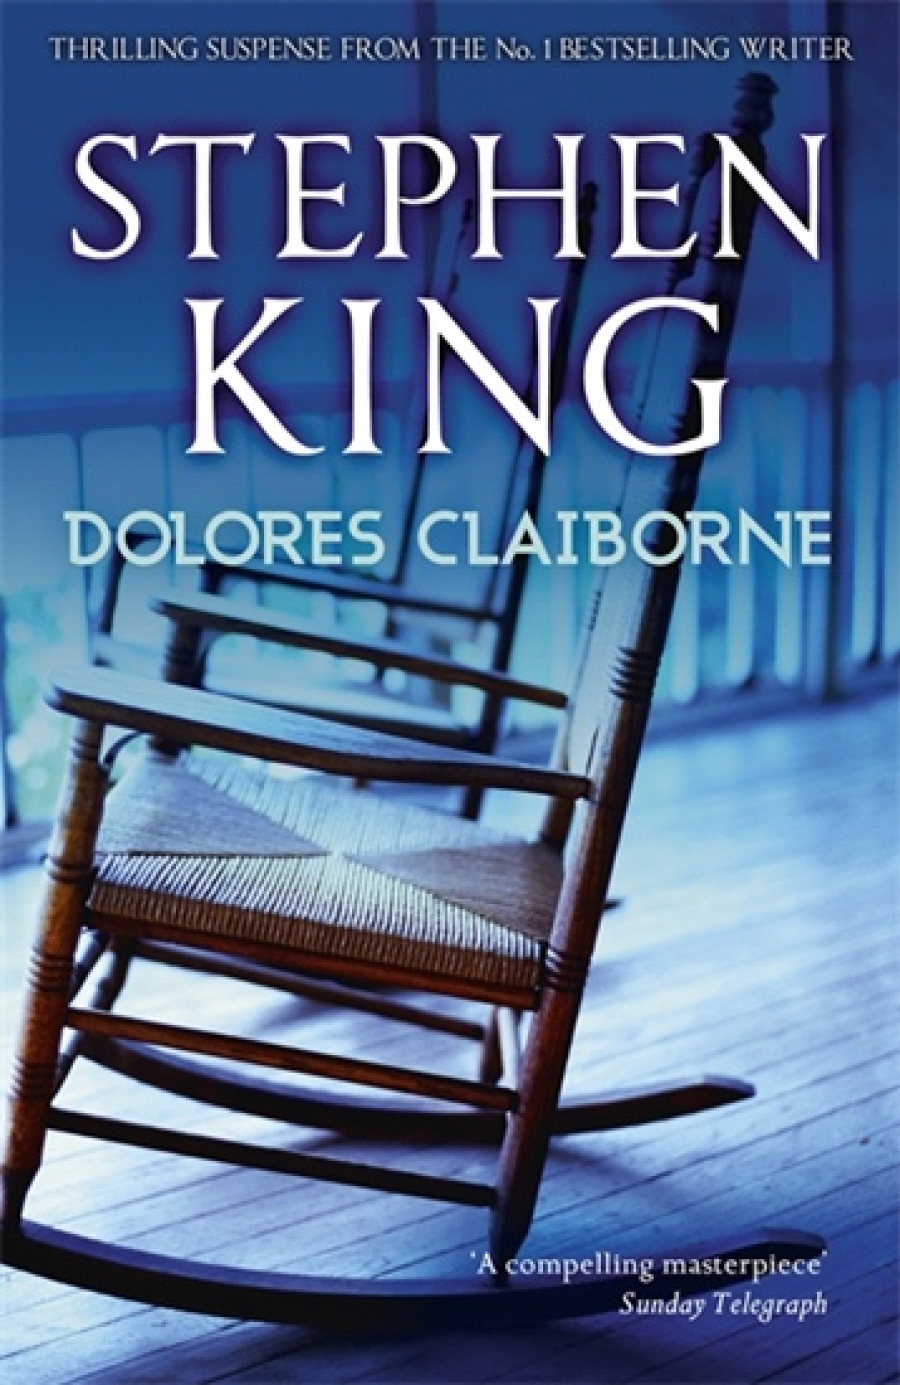 King S. Dolores Claiborne 